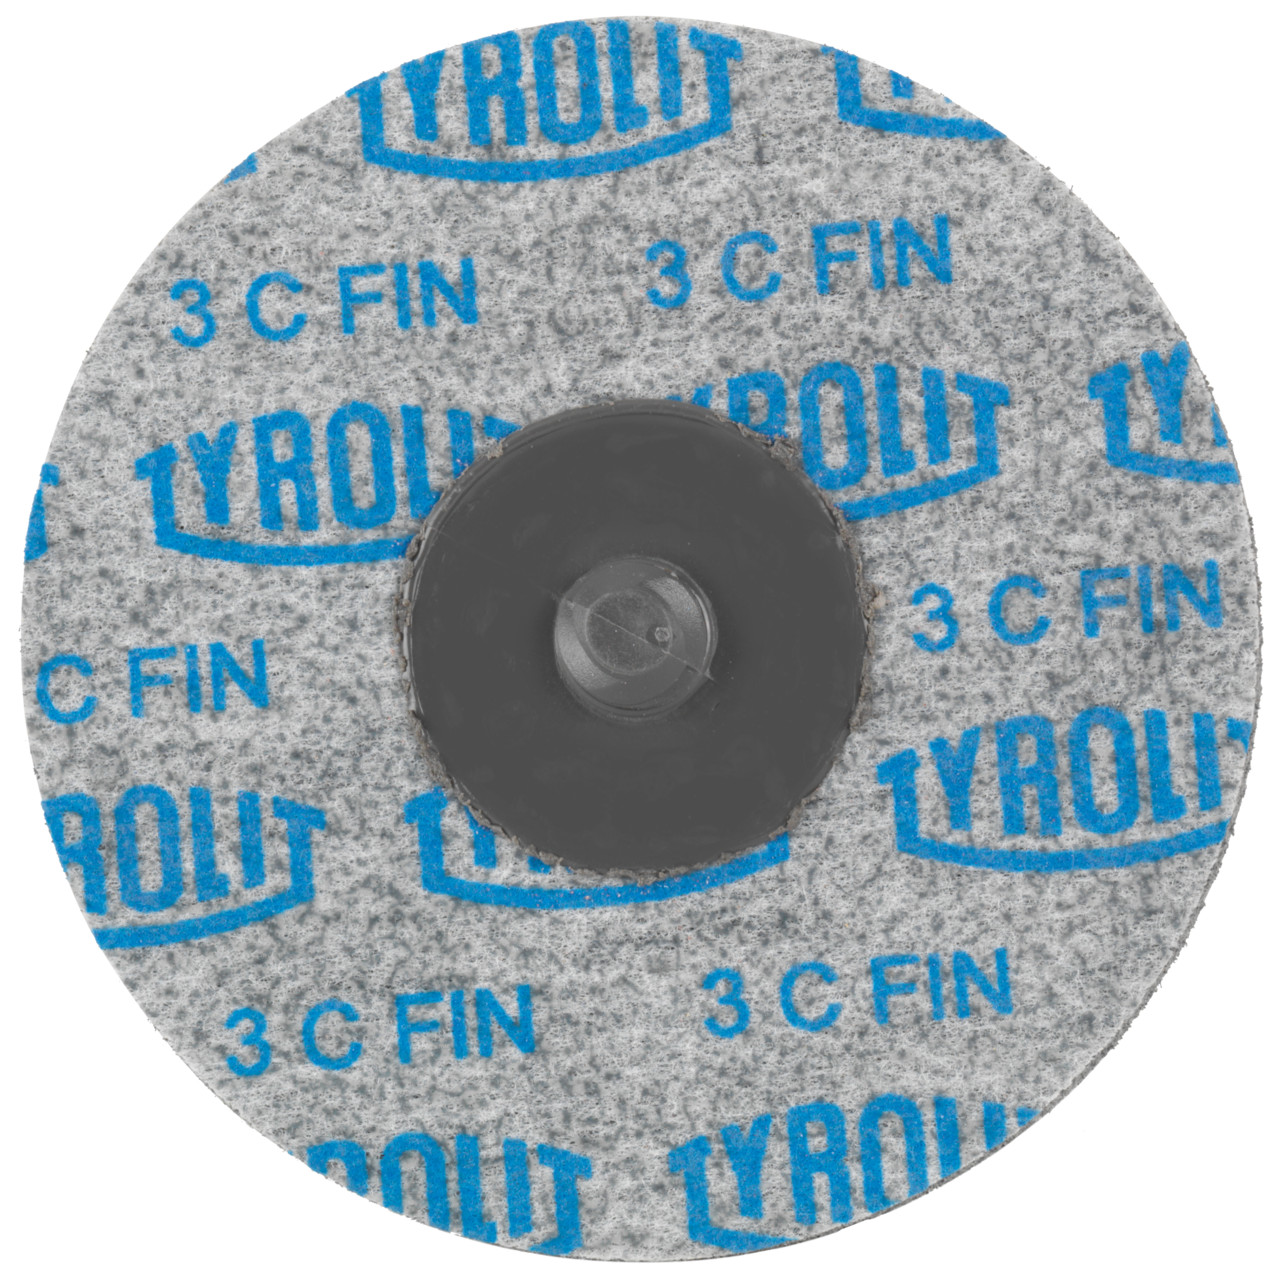 Tyrolit Discos compactos prensados DISCO DE CAMBIO RÁPIDO Dimensión 51xR De uso universal, 6 C FEIN, forma: QDISC, Art. 34190133